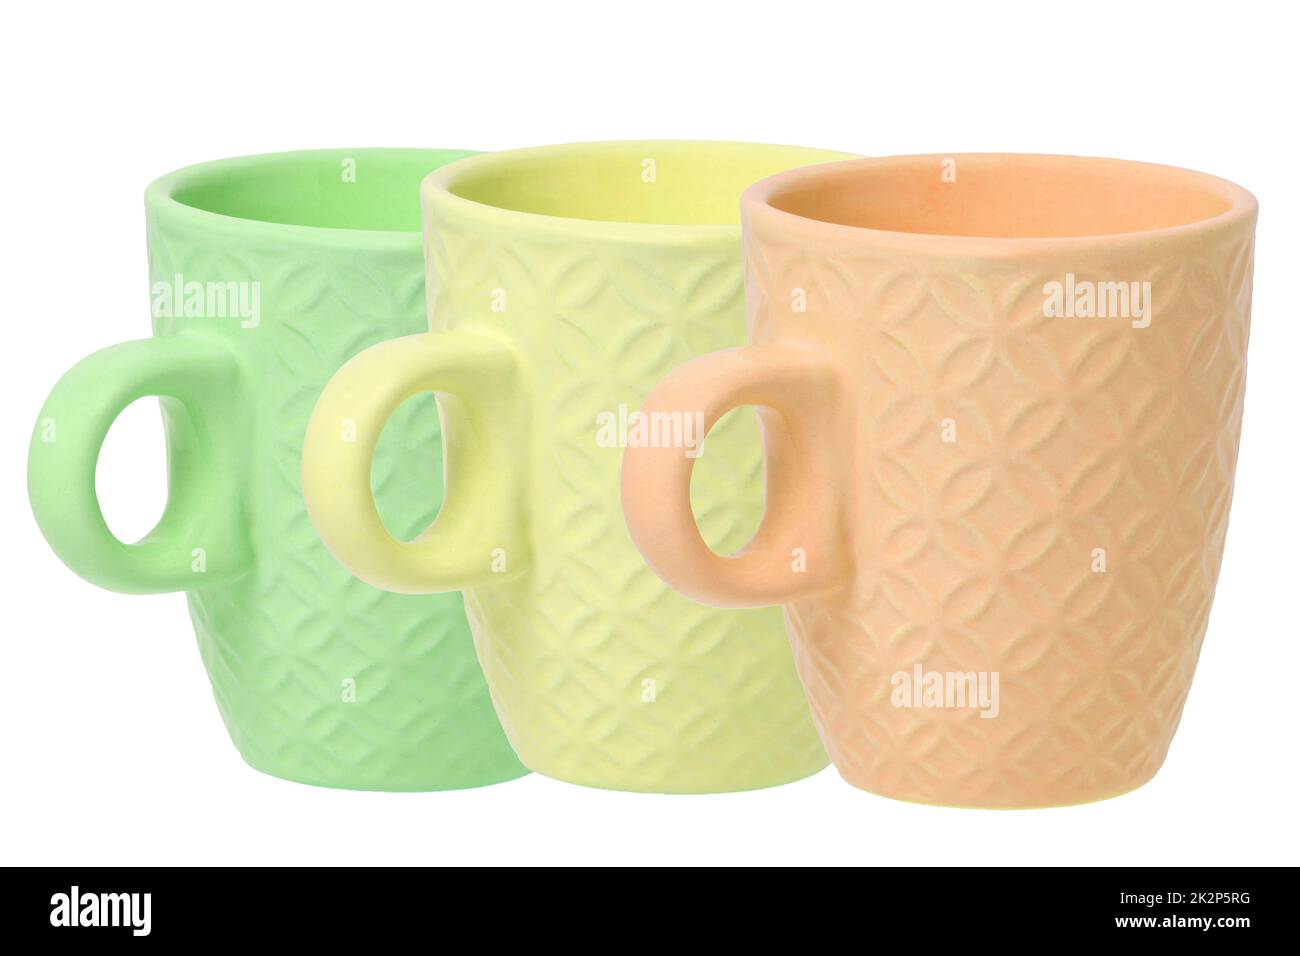 Tasse de café. Gros plan de trois tasses vides en céramique verte, jaune et orange avec espace pour l'étiquette isolée sur un fond blanc. Concept café du matin. Espace. Macro. Banque D'Images